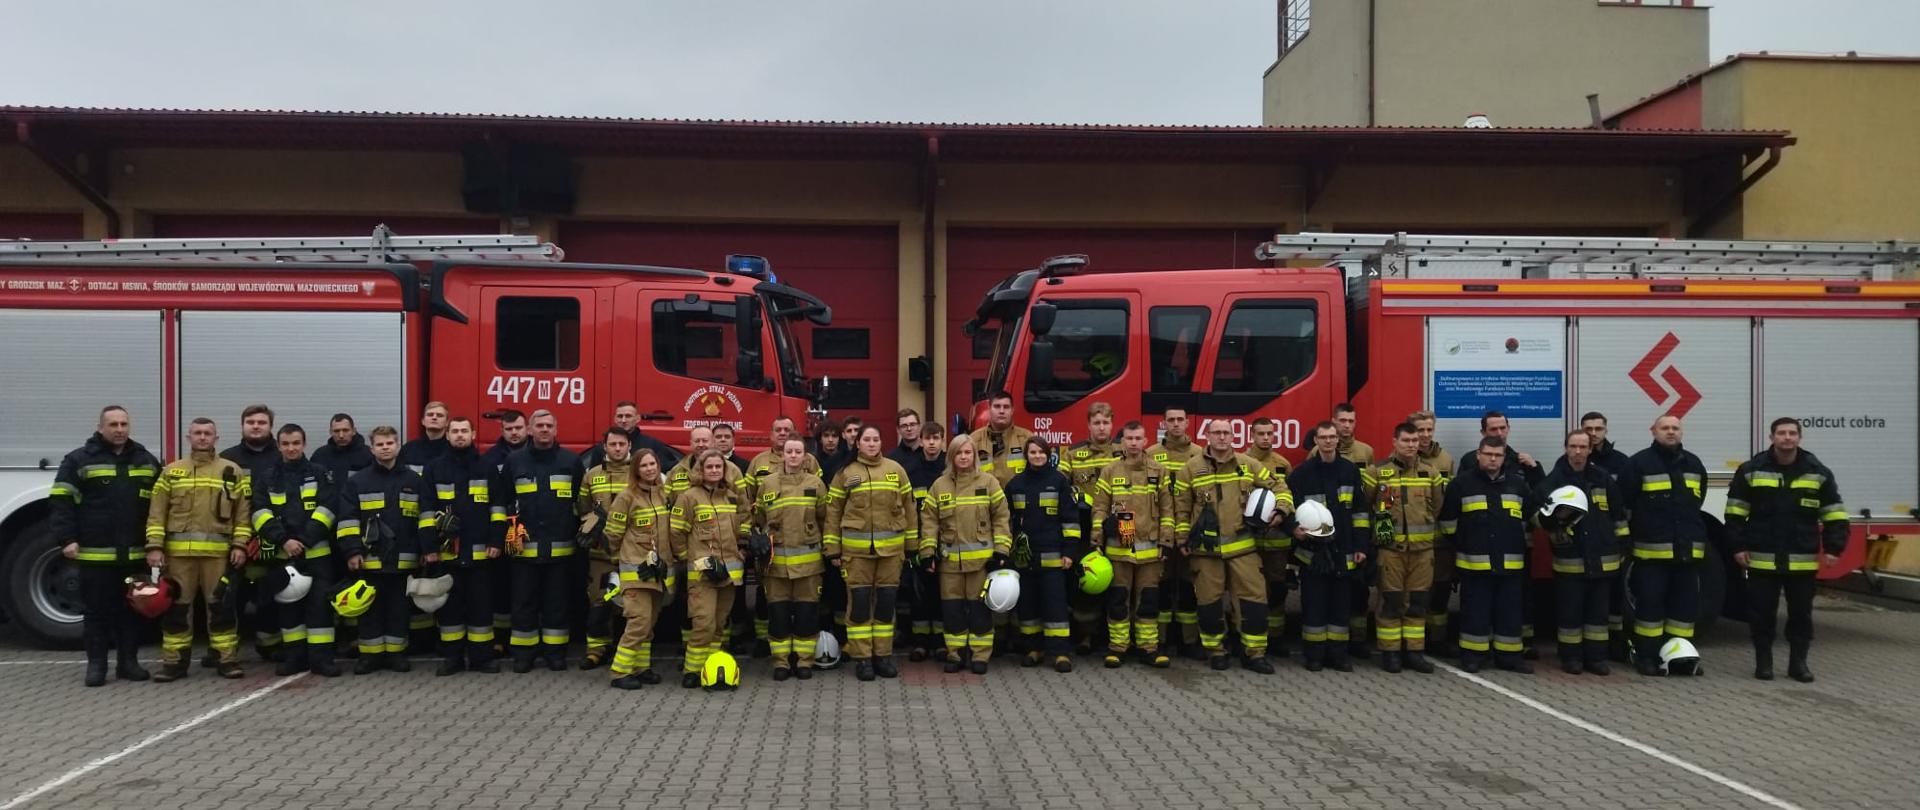 Zdjęcie grupowe strażaków ochotników i komisji egzaminacyjnej uczestniczących w egzaminie kończącym „Szkolenie podstawowe strażaka ratownika OSP” na tle samochodów pożarniczych oraz bram garażowych strażnicy JRG Grodzisk Maz.